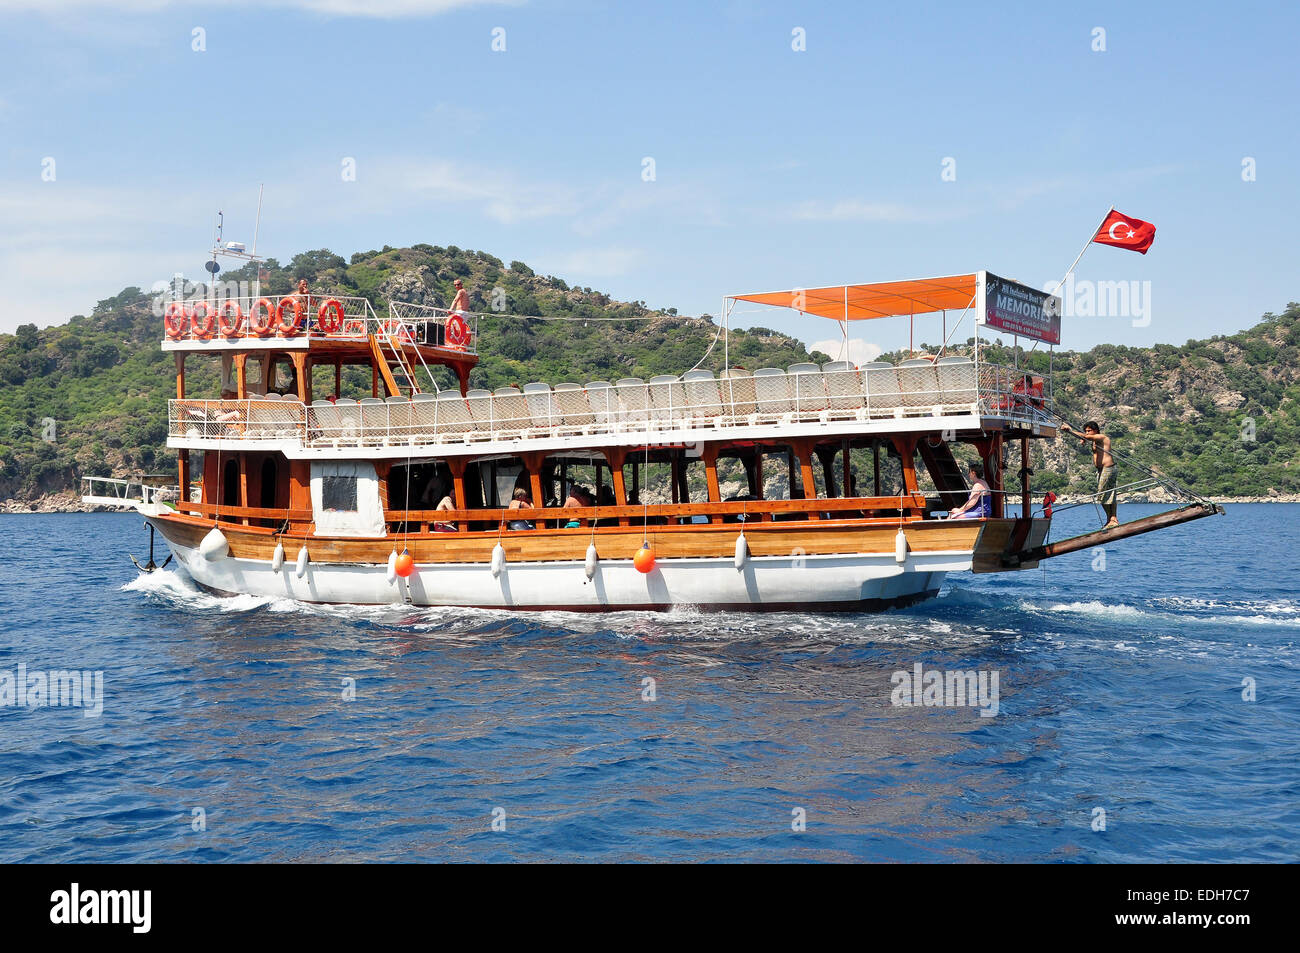 En bois d'un bateau de tourisme de Marmaris sur la façon de Turunc pour les touristes à visiter le marché local. Banque D'Images